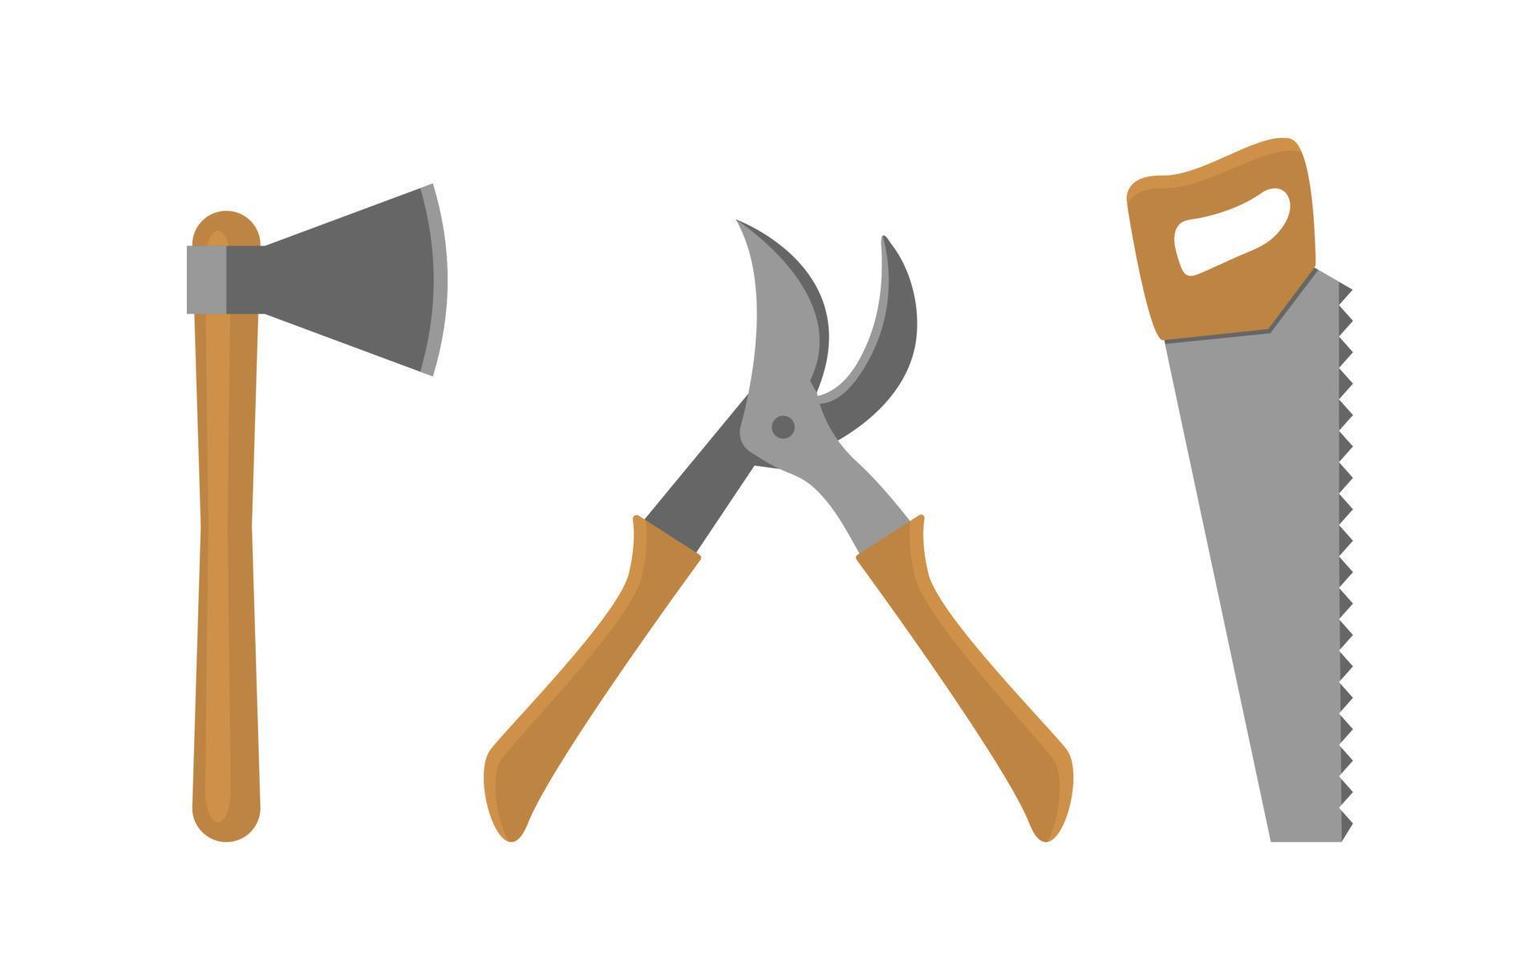 herramientas para talar, aserrar y podar árboles. hacha, sierra y tijeras de podar. vector